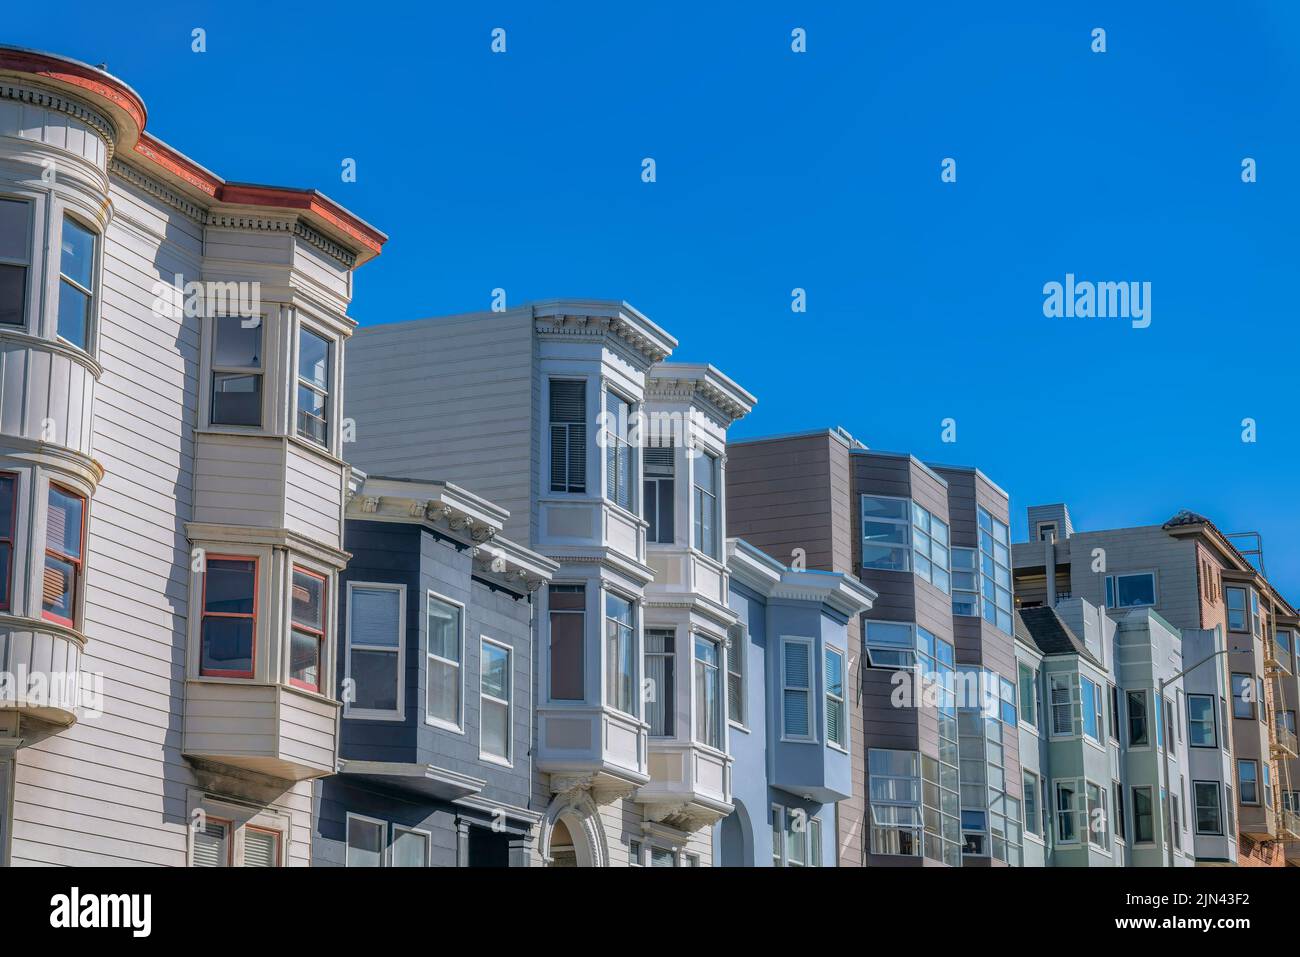 Vue latérale de chemisiers avec baies vitrées contre le ciel à San Francisco, Californie. Façade de maisons avec différents types d'extérieur et peint WO Banque D'Images